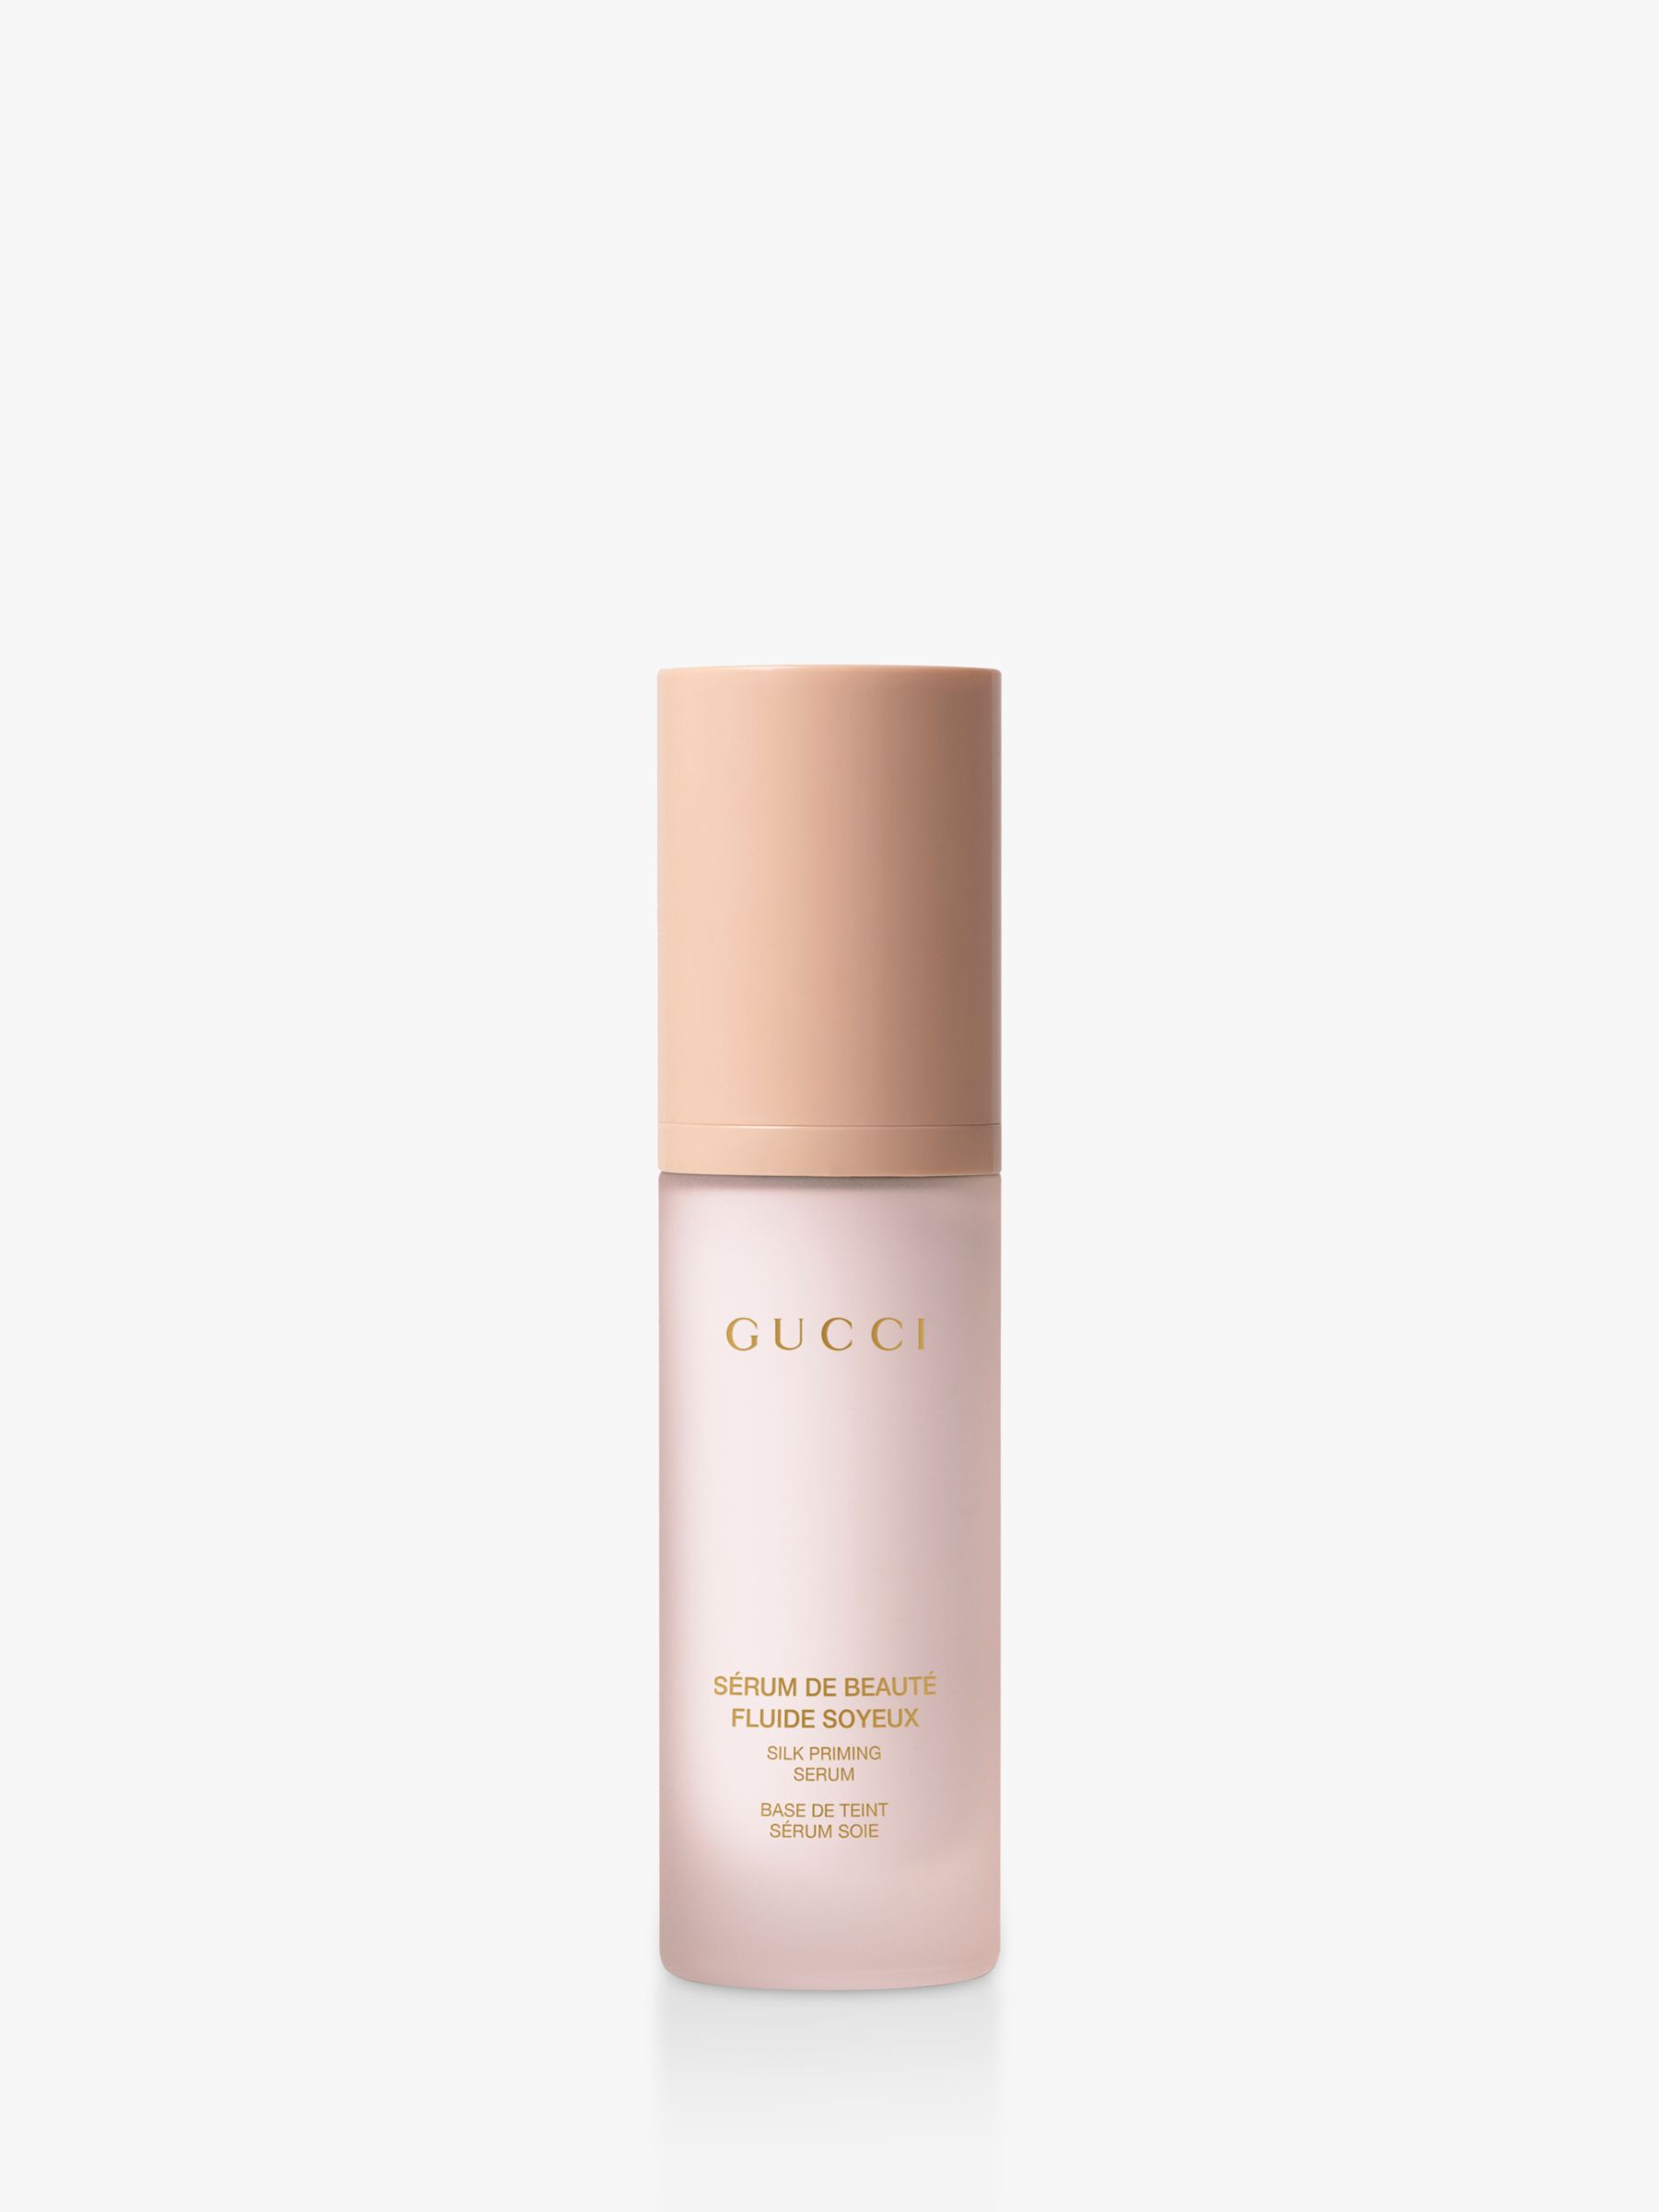 Gucci Sérum De Beauté Fluide Soyeux Silk Primer Serum, 30ml 2